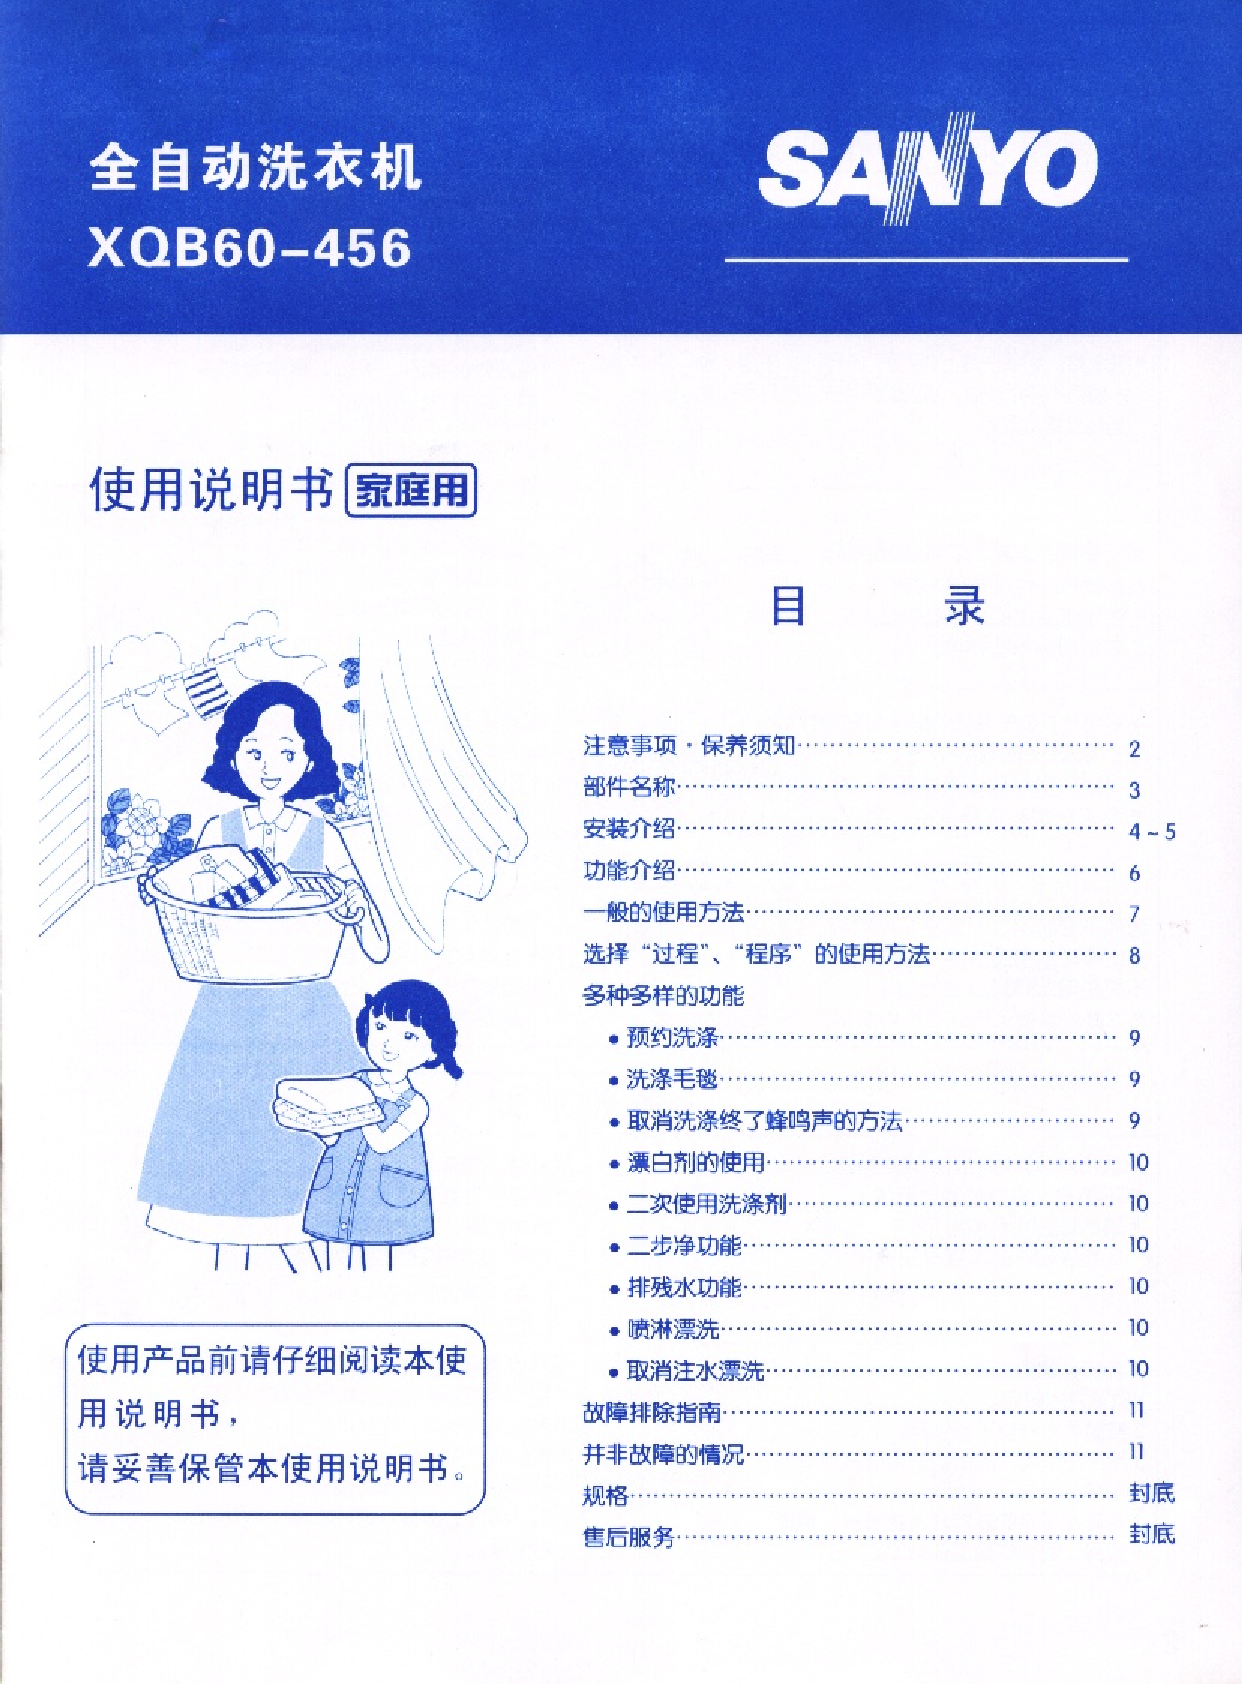 三洋 Sanyo XQB60-456 用户指南 封面